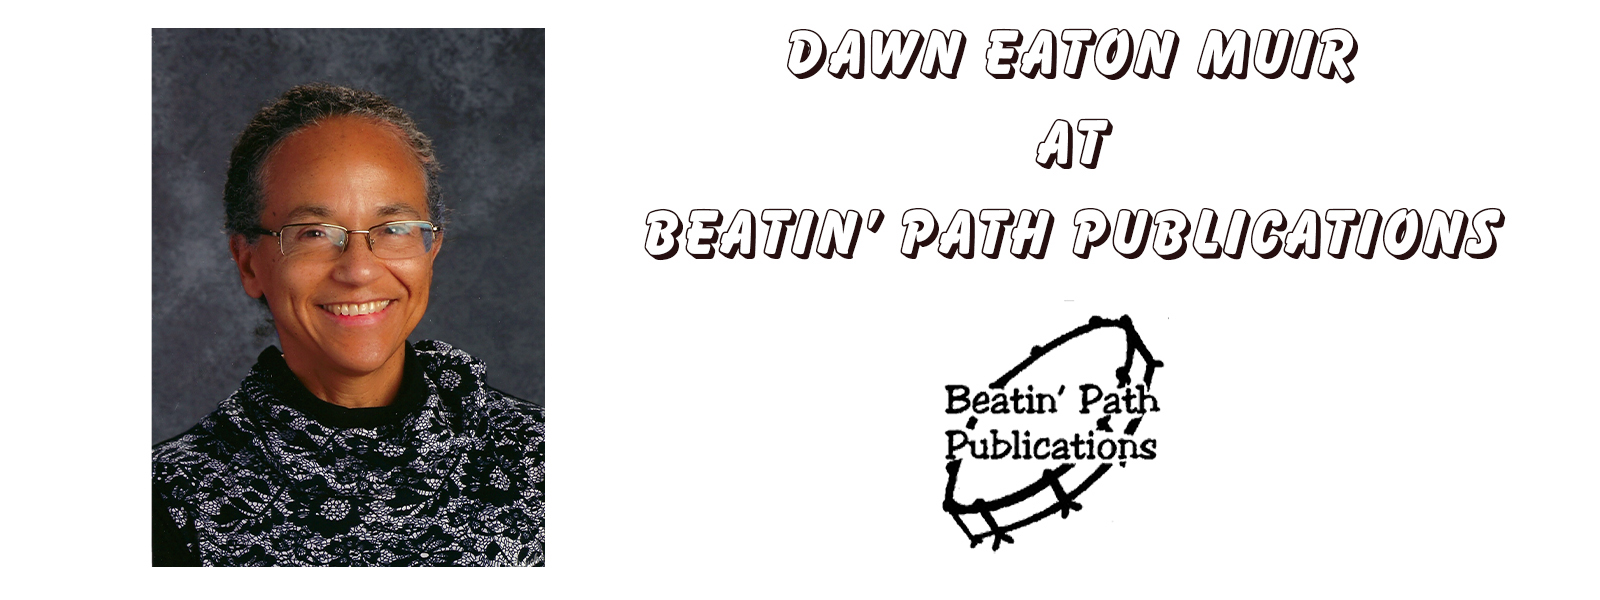 Dawn Eaton Muir at Beatin' Path Publications